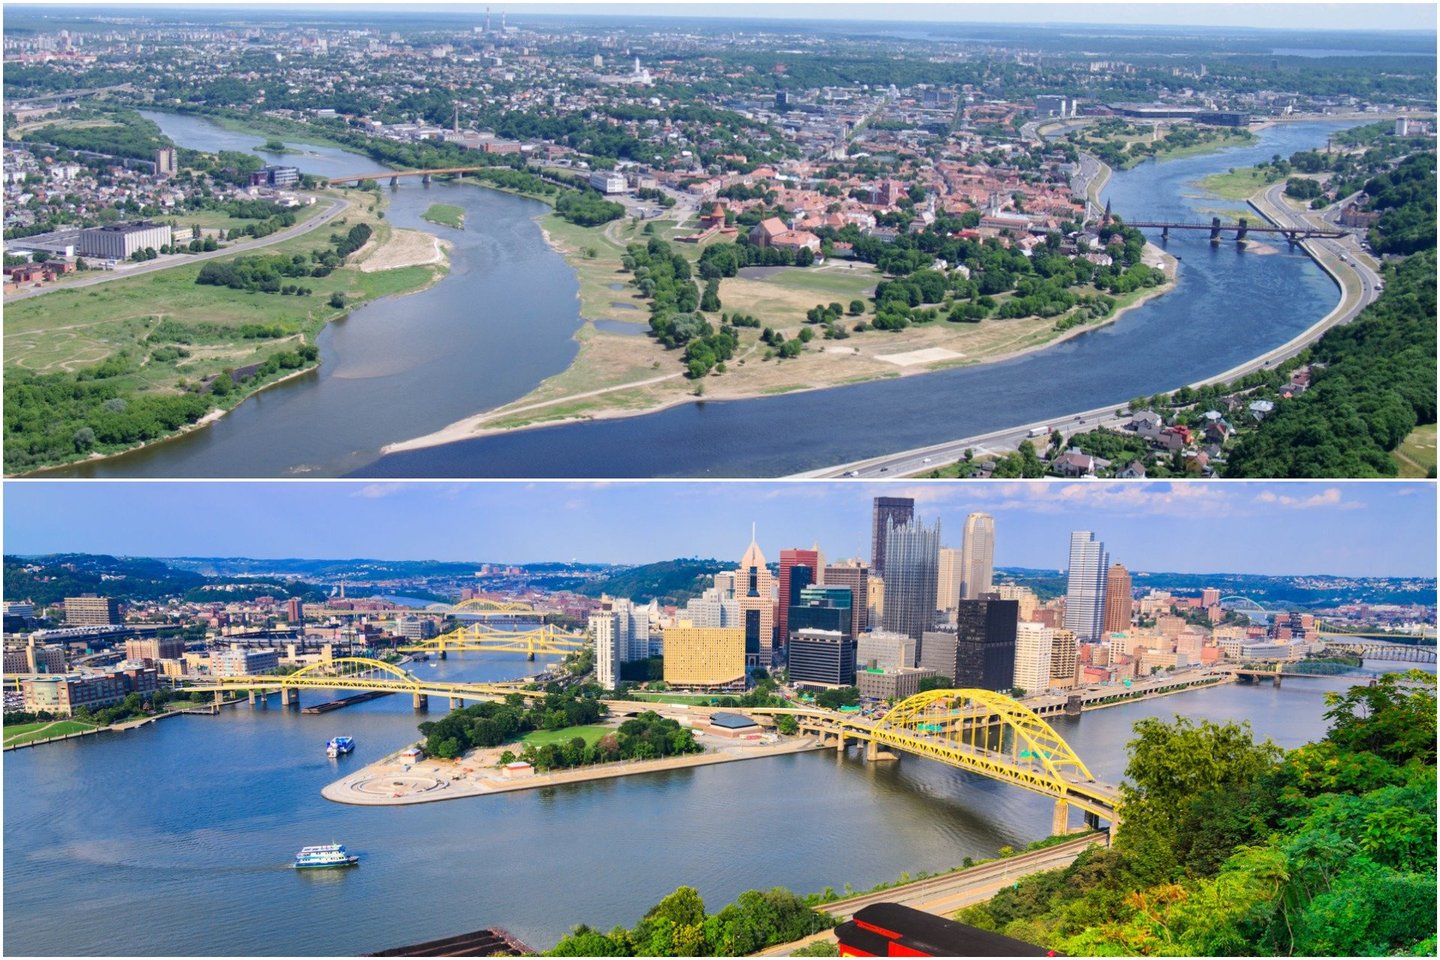   Iš pirmo žvilgsnio Kaunas ir Pitsburgas kartografiniu atžvilgiu atrodo labai panašūs.<br> M. Patašiaus / 123rf nuotr.